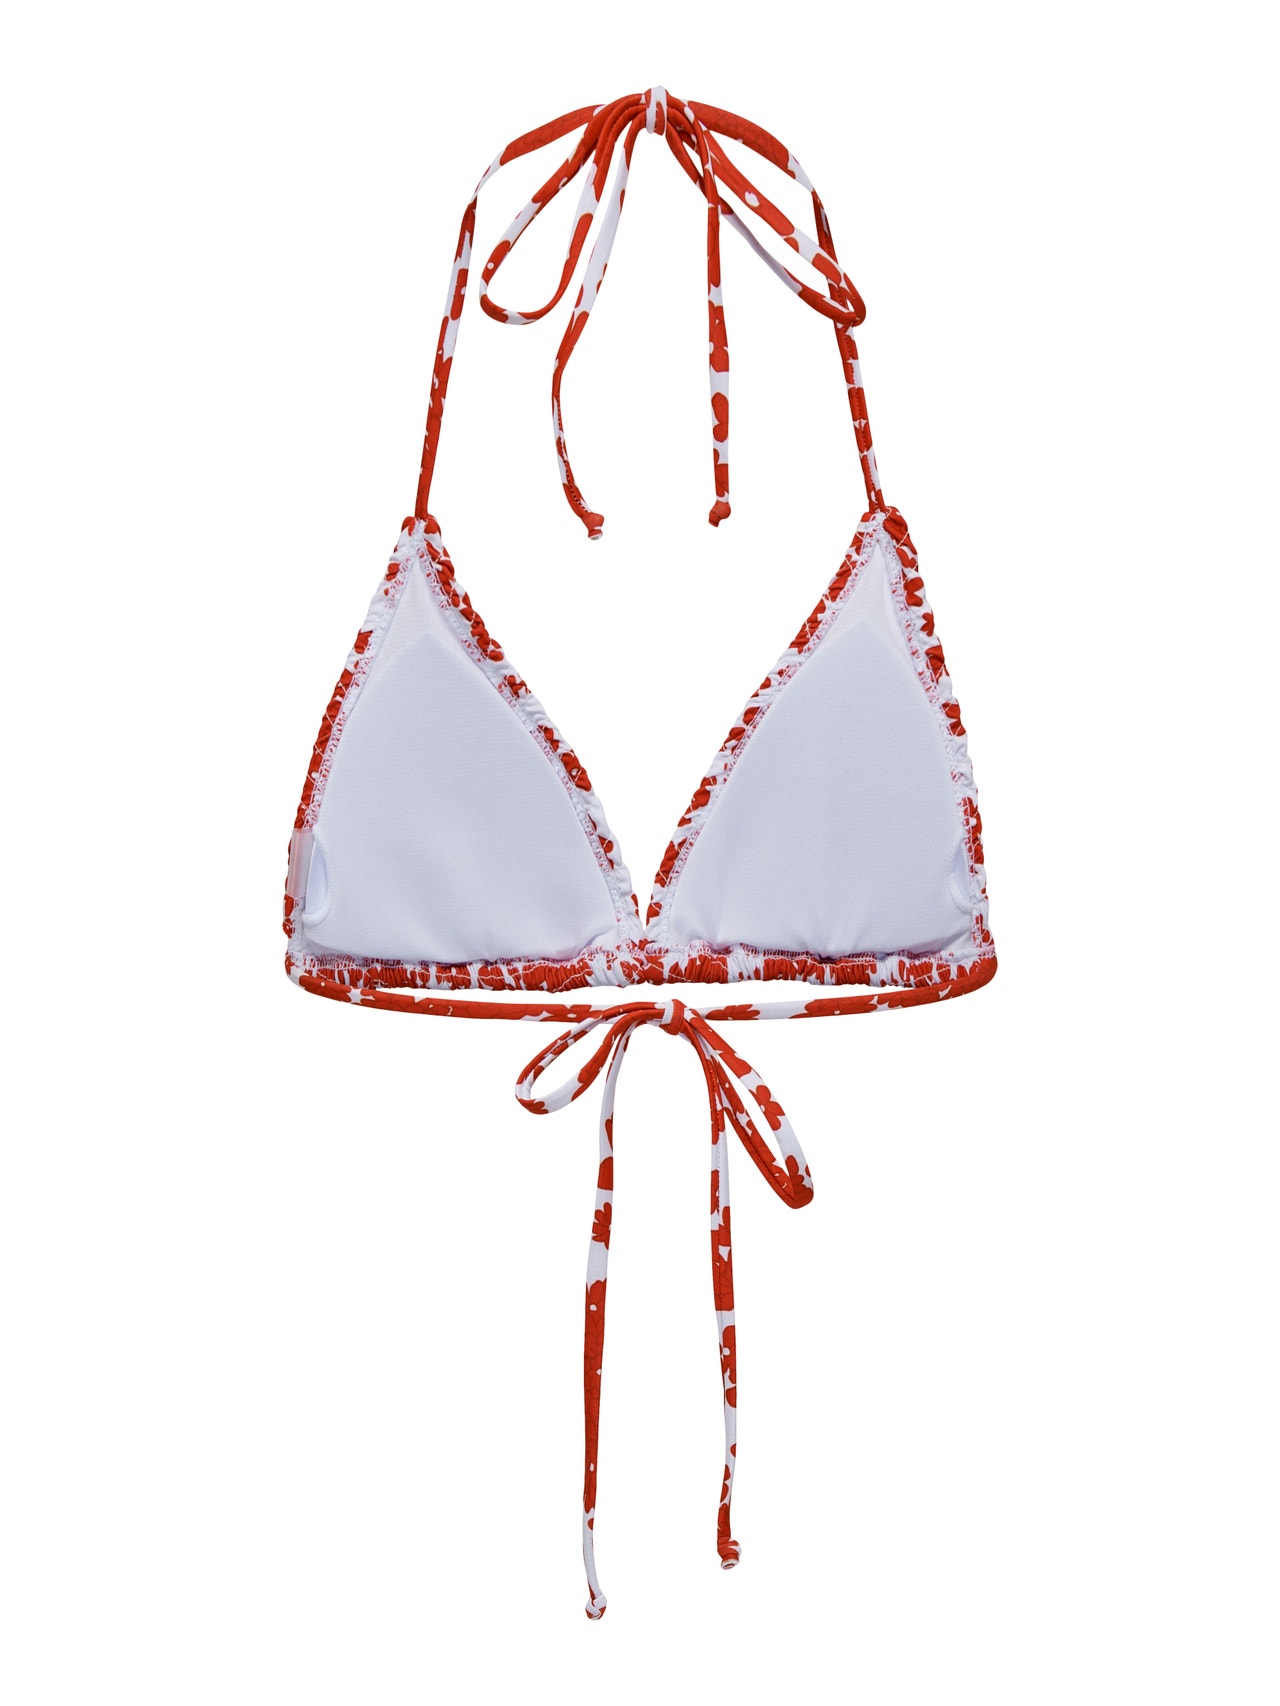 ONLY Adjustable shoulder straps Swimwear -Cloud Dancer - 15282665